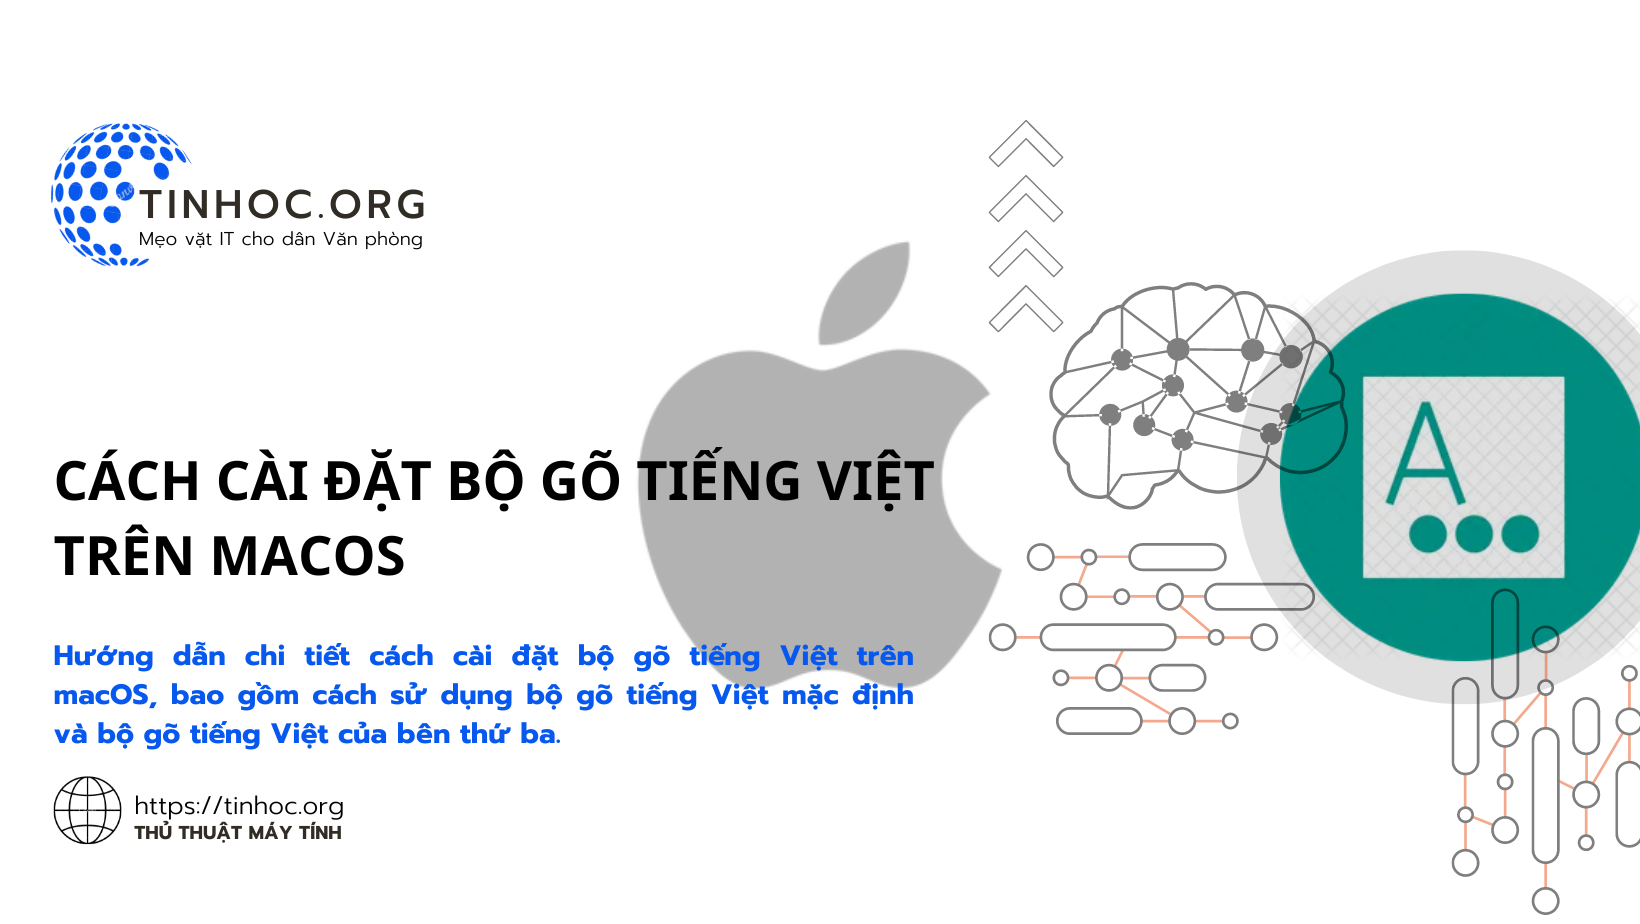 Hướng dẫn chi tiết cách cài đặt bộ gõ tiếng Việt trên macOS, bao gồm cách sử dụng bộ gõ tiếng Việt mặc định và bộ gõ tiếng Việt của bên thứ ba.